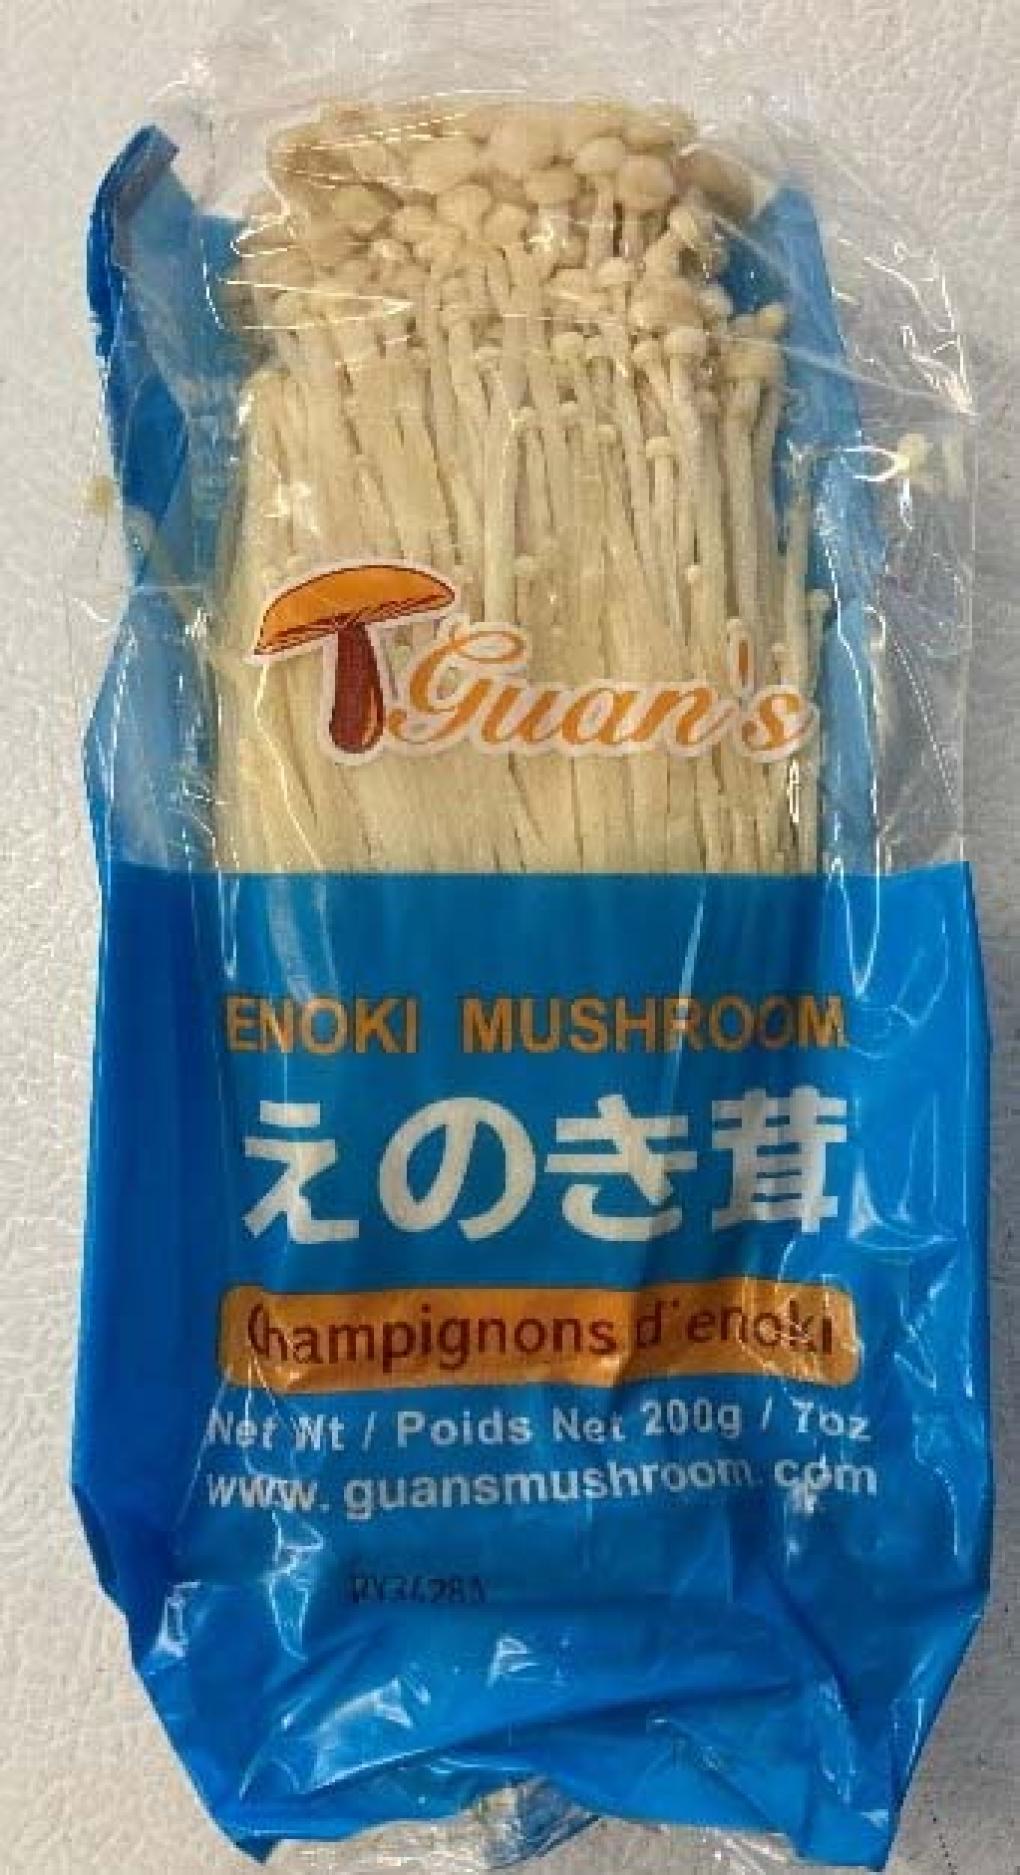 Guan’s Mushroom recalls Enoki mushroom because of Listeria monocytogenes